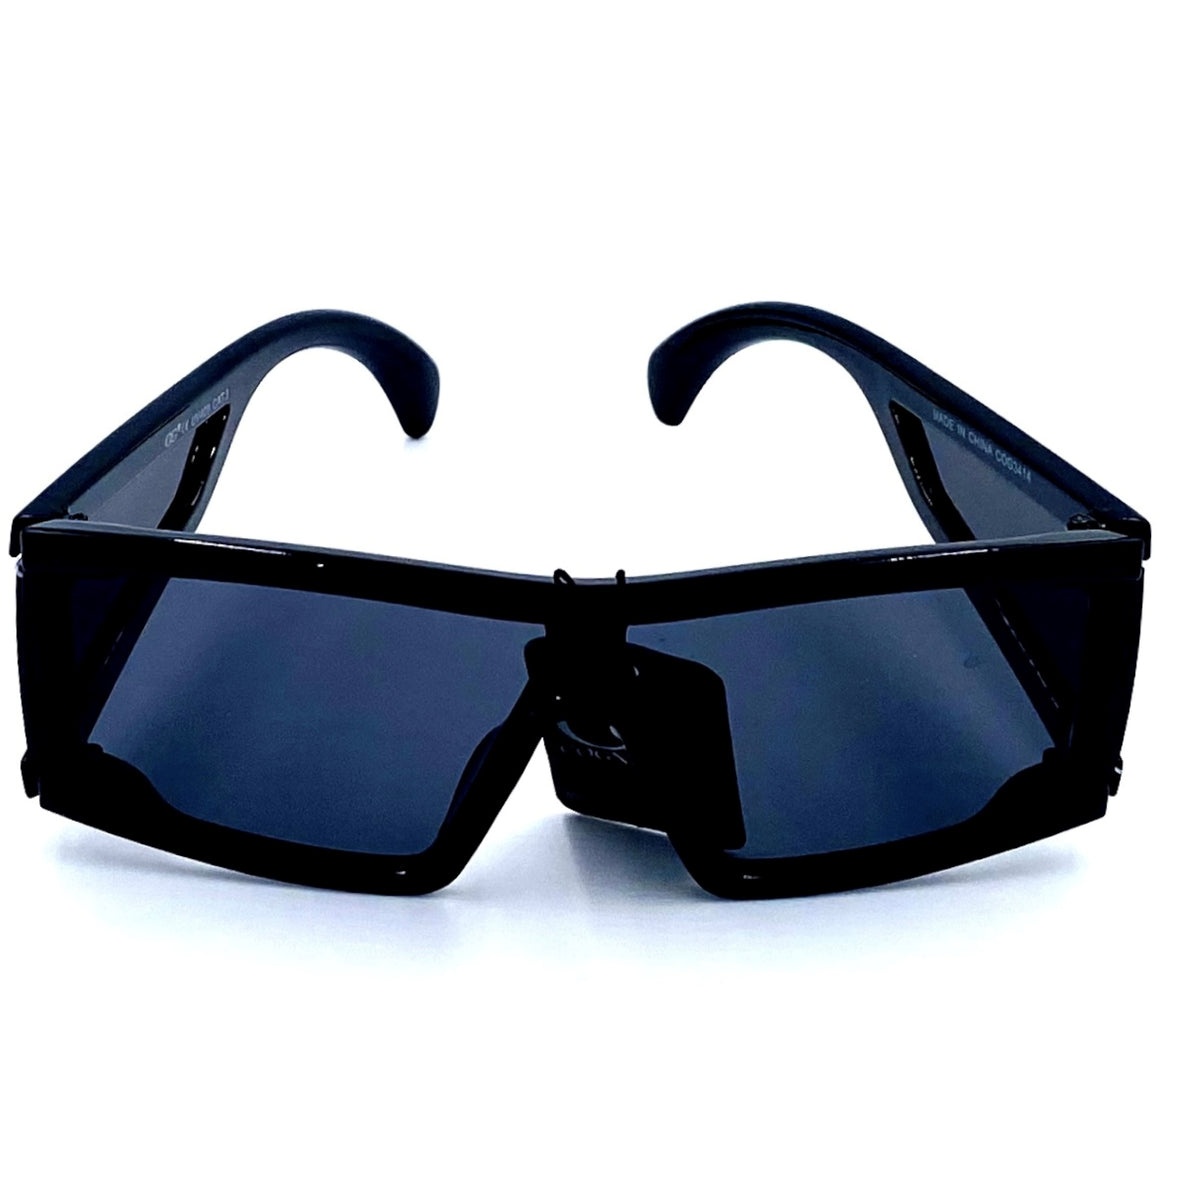 Lunette de soleil de la marque CoG Cogni Wear avec protection solaire 400UV. Notre Lunette De Soleil CoG Cogni Wear est faite pour vous séduire! Avec un noir brillant et un style innapercu, elle est conçue pour vous offrir le plus de confort et de protection possible. Soyez à la mode et protégez vos yeux avec nos lunettes!